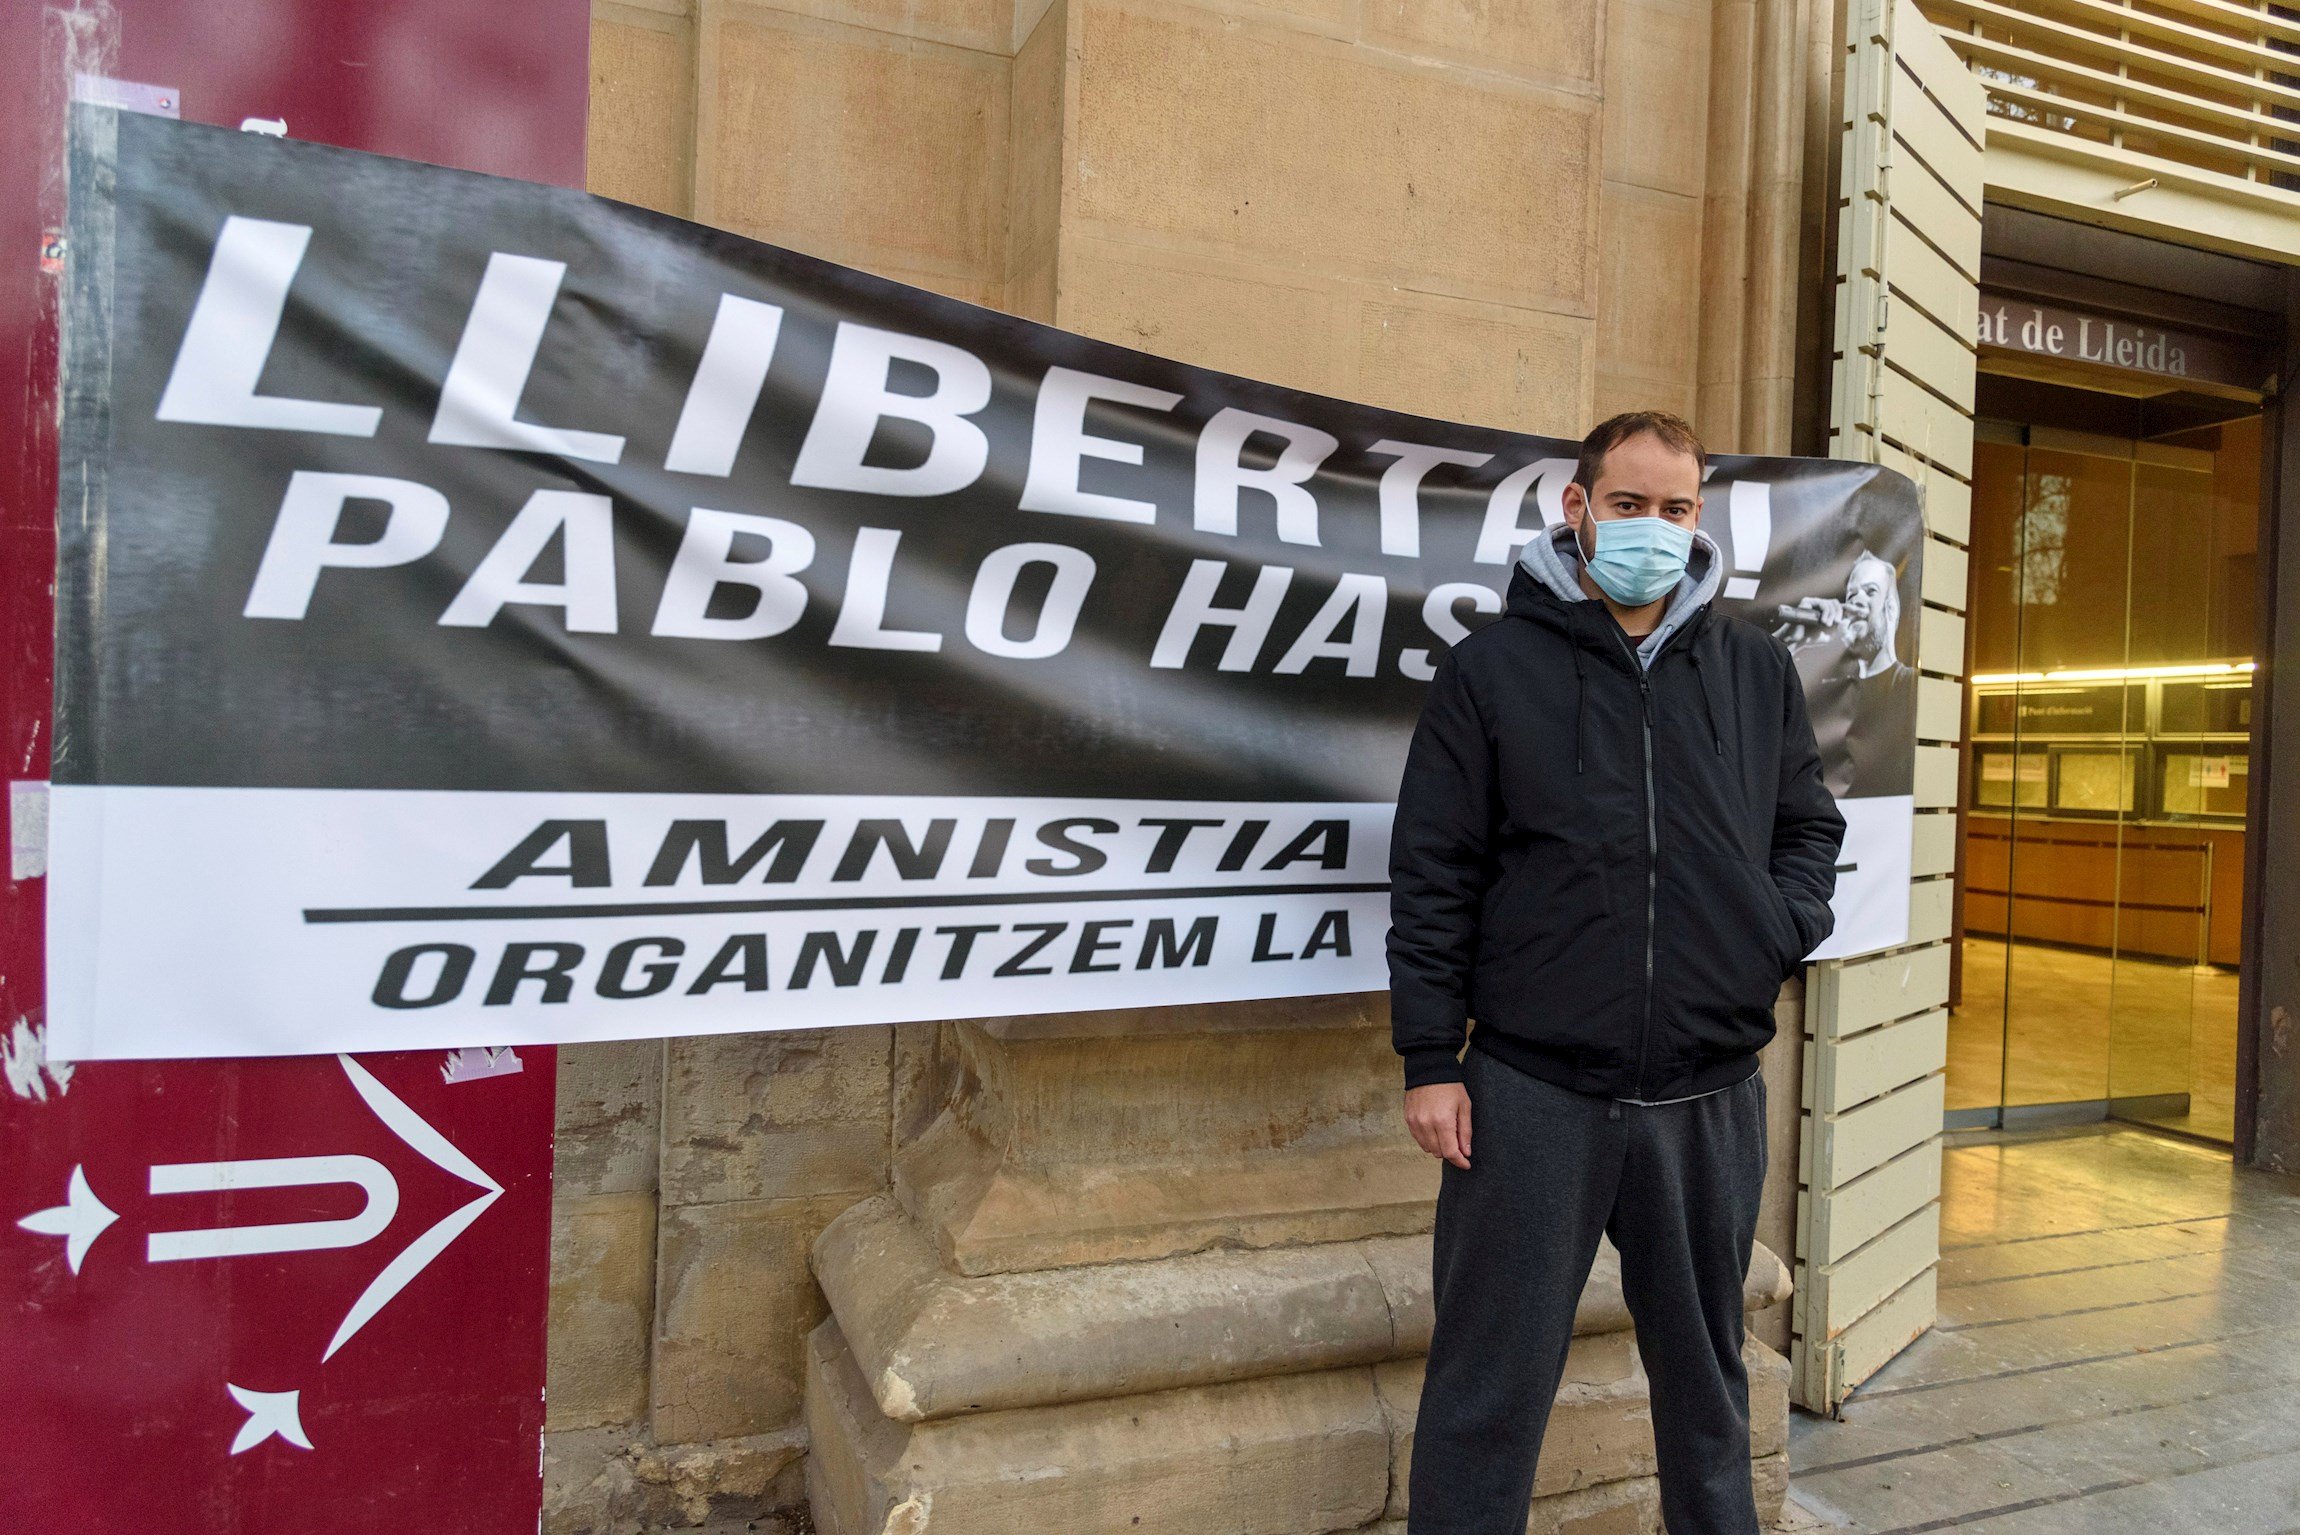 Escriptors i periodistes exigeixen la llibertat de Pablo Hasél